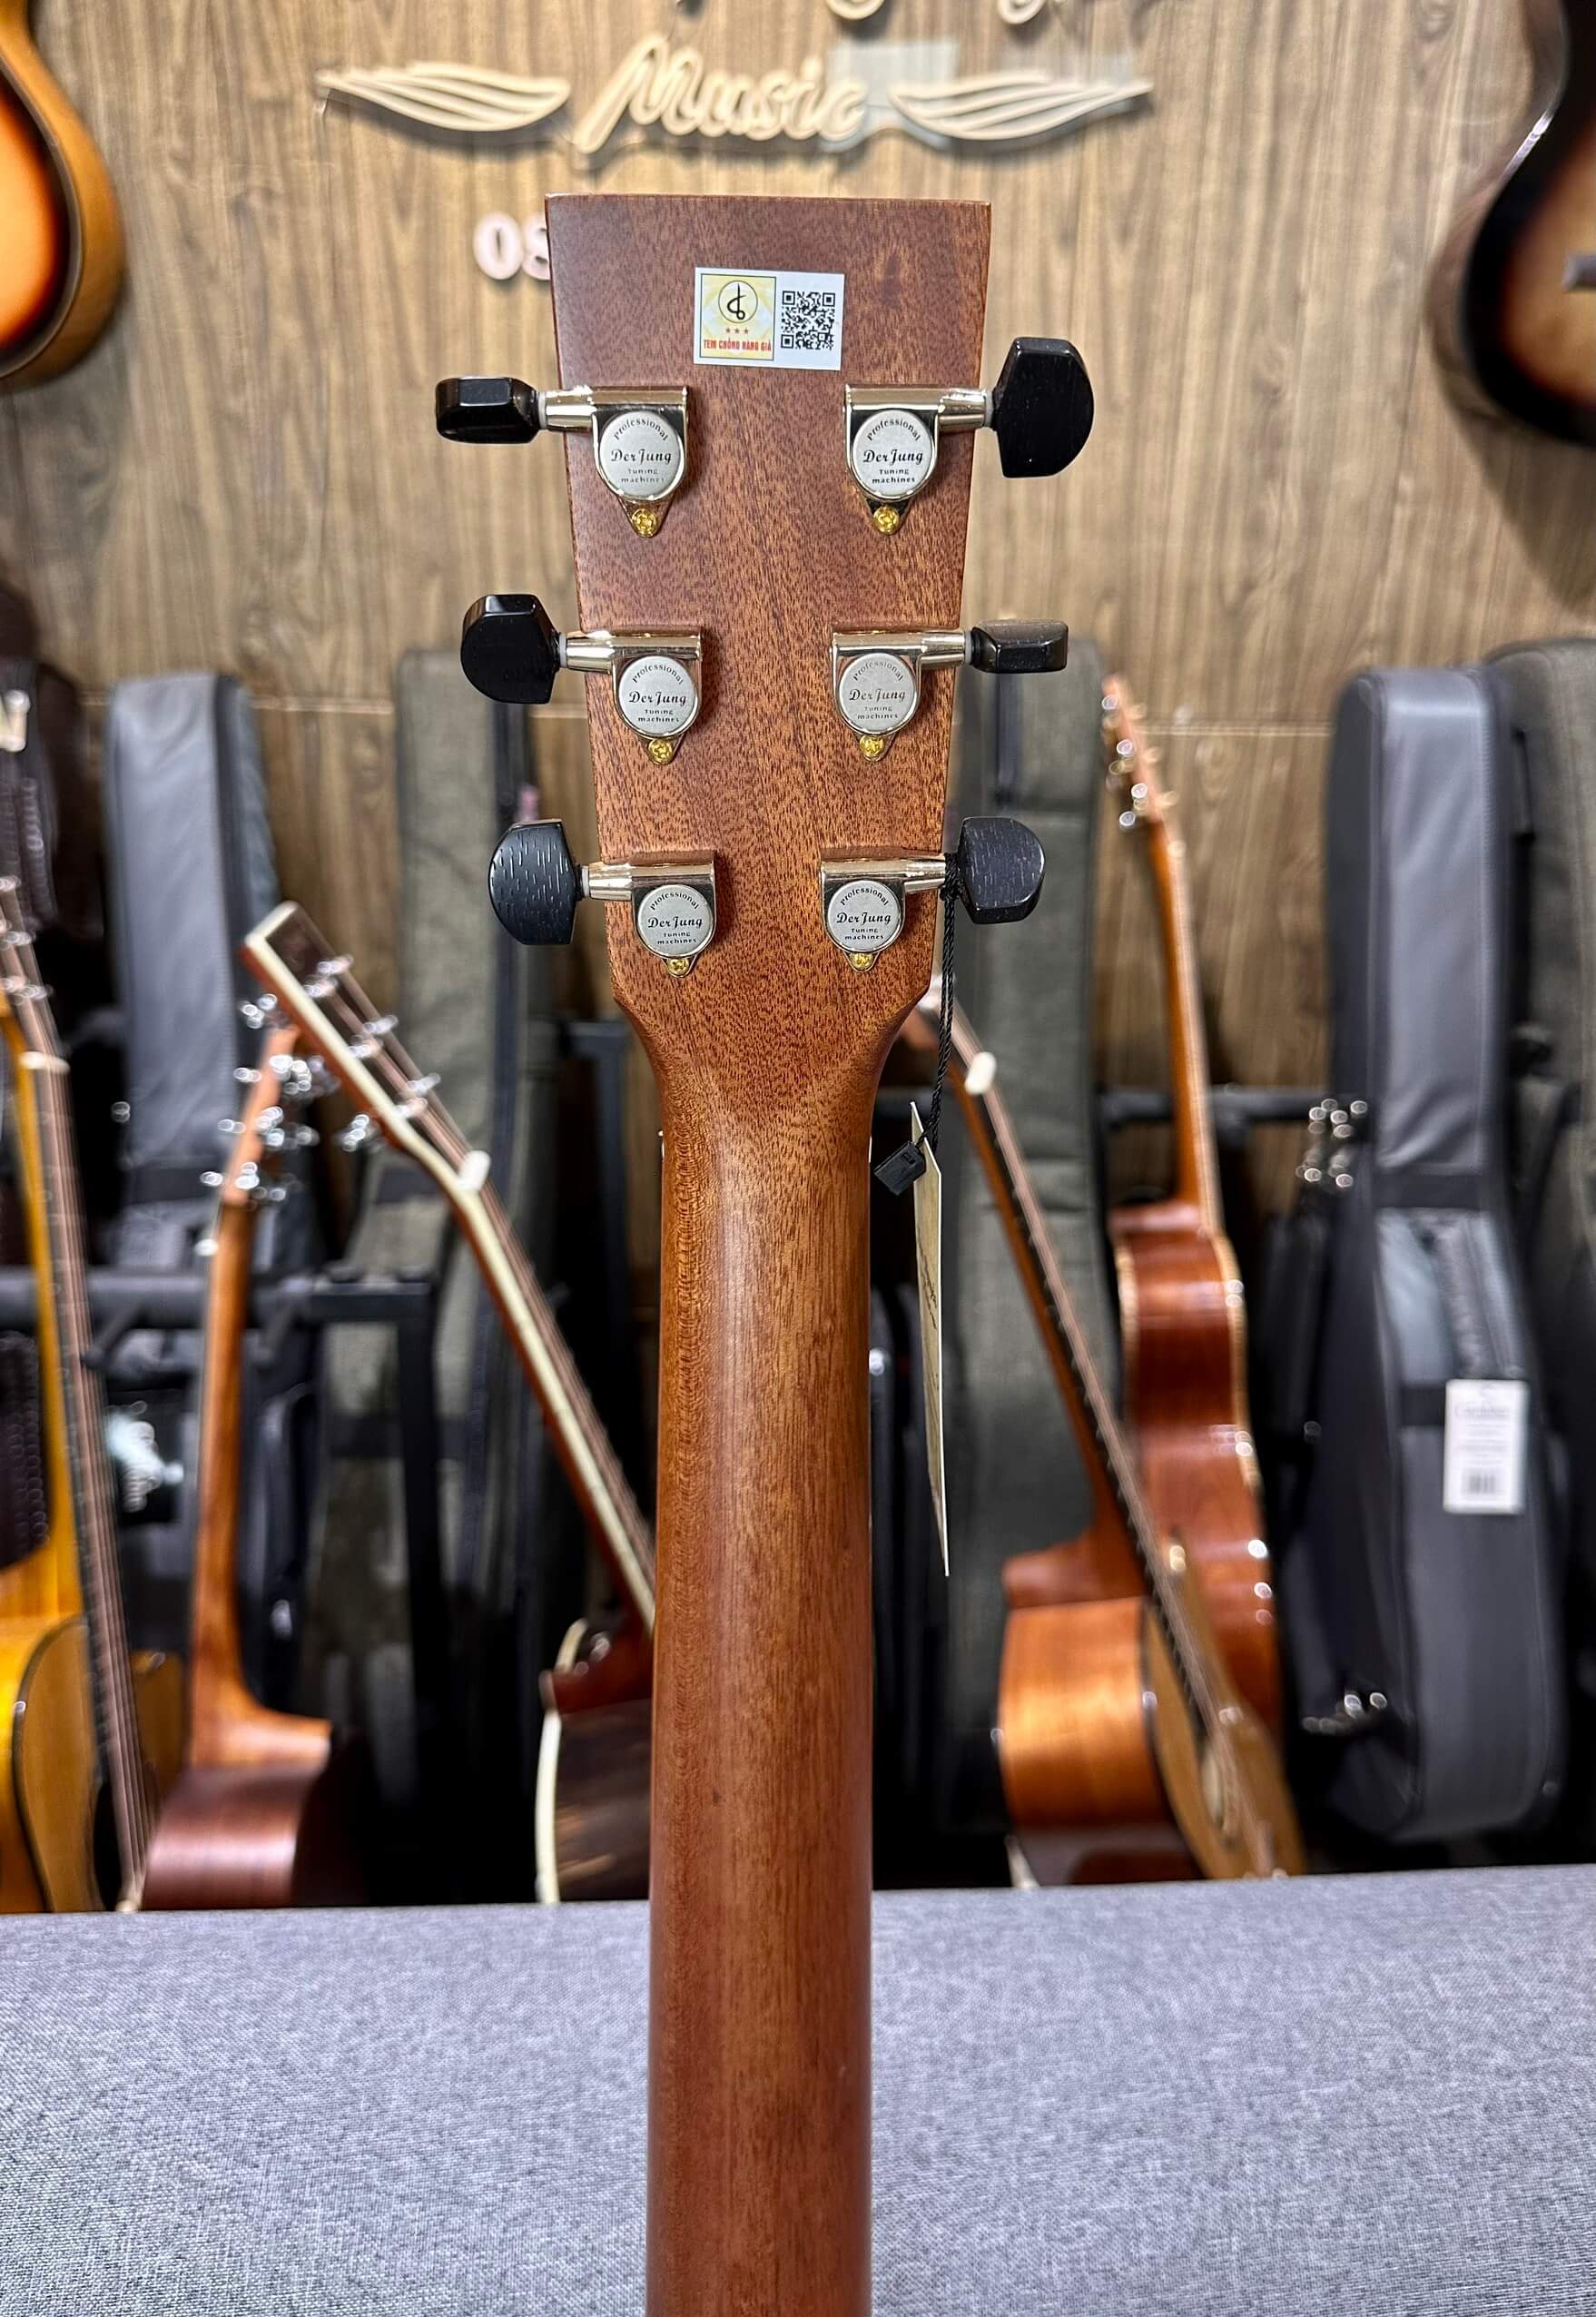 Guitar Acoustic Lương Sơn LSA750CX Custom Standard l Cây Đàn Tốt Nhất Trong Tầm Giá l Bảo Hành Tới 5 Năm